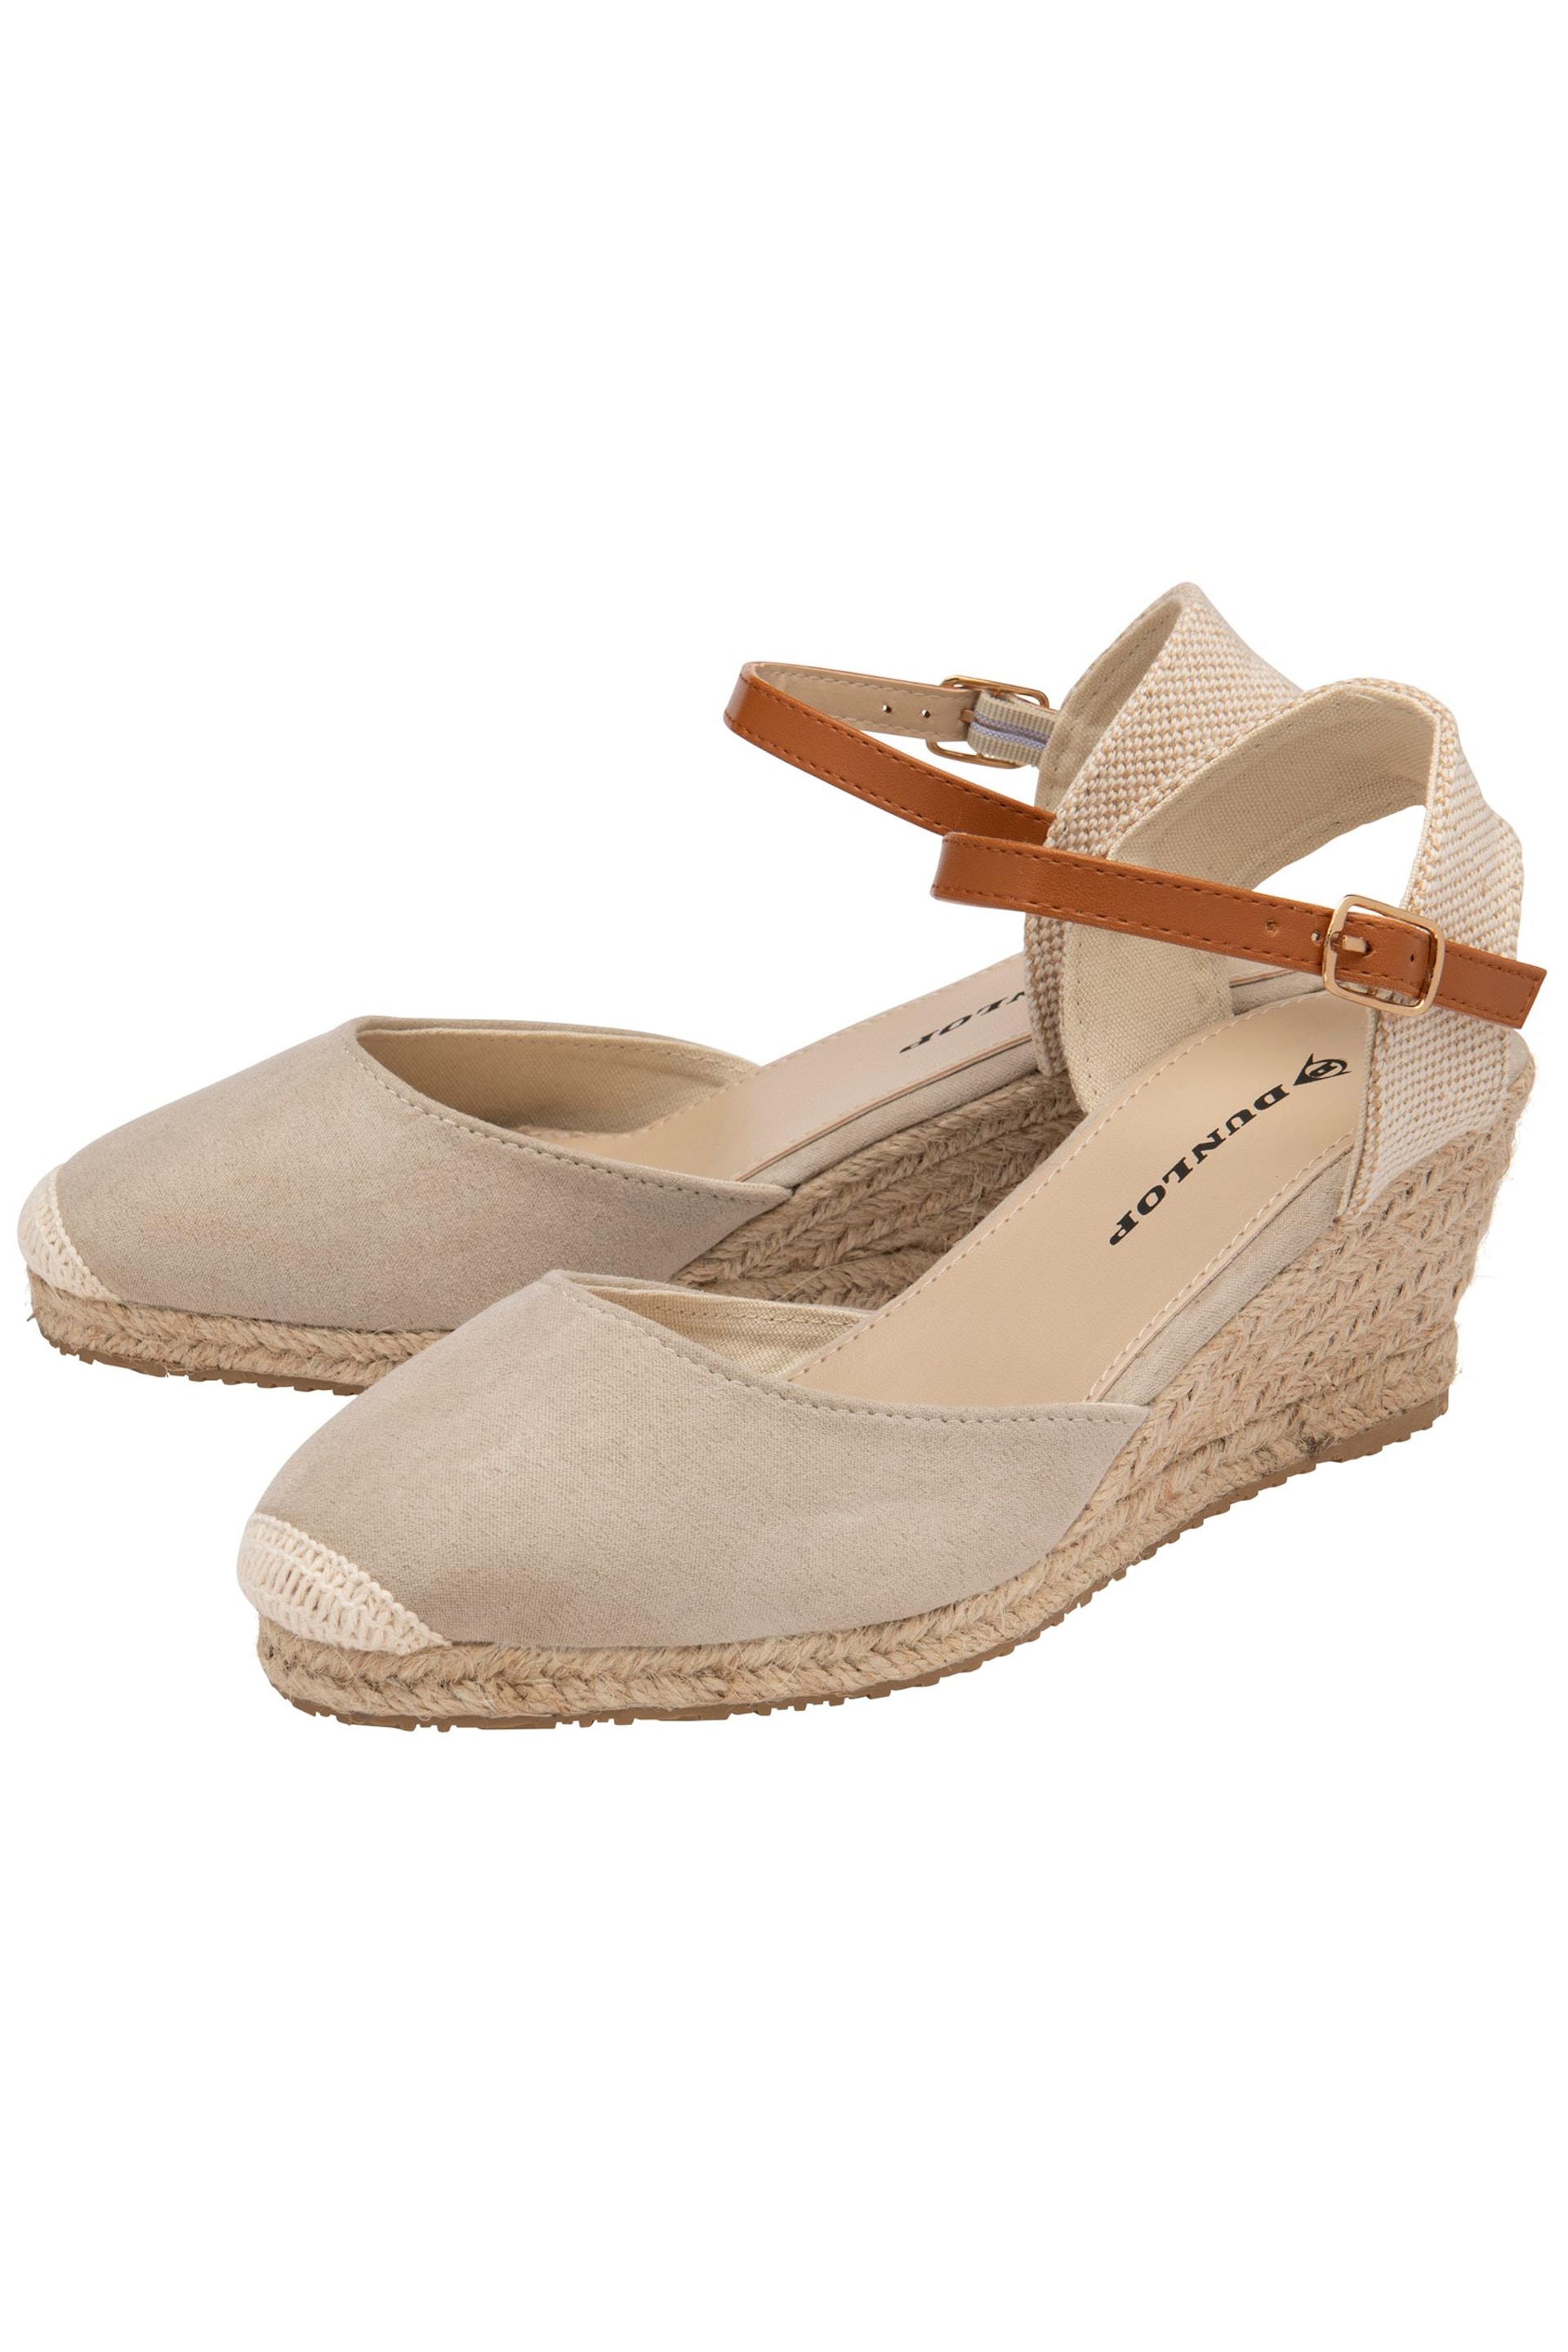 Dunlop Cream Ladies Wedge Espadrille Sandals - Image 2 of 4